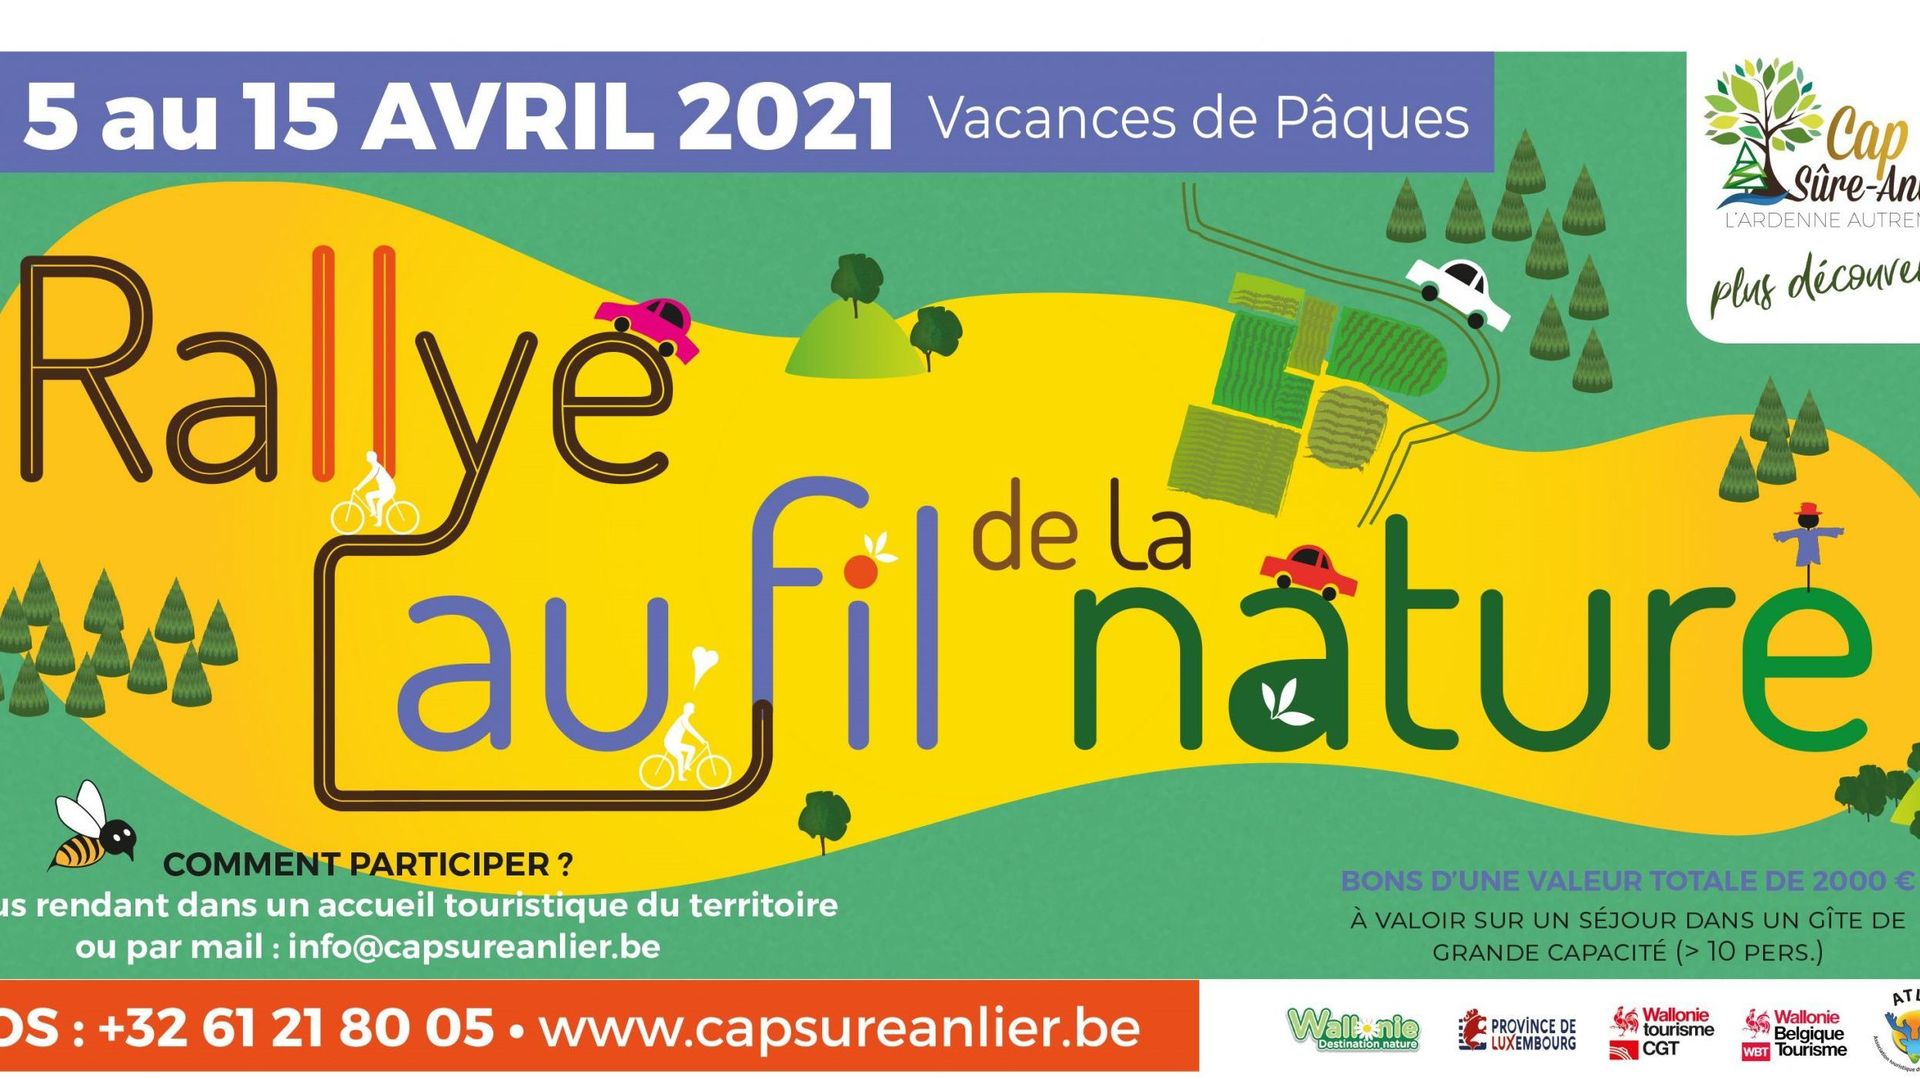 La Maison du Tourisme Cap Sûre-Anlier (associée aux SI et OT de son territoire) organise son 7ème rallye touristique sous une nouvelle formule. Il s’adapte à l’actualité et se déroule sur dix jours, du 5/4 au 15/4, avec comme thème « Au fil de la nature »